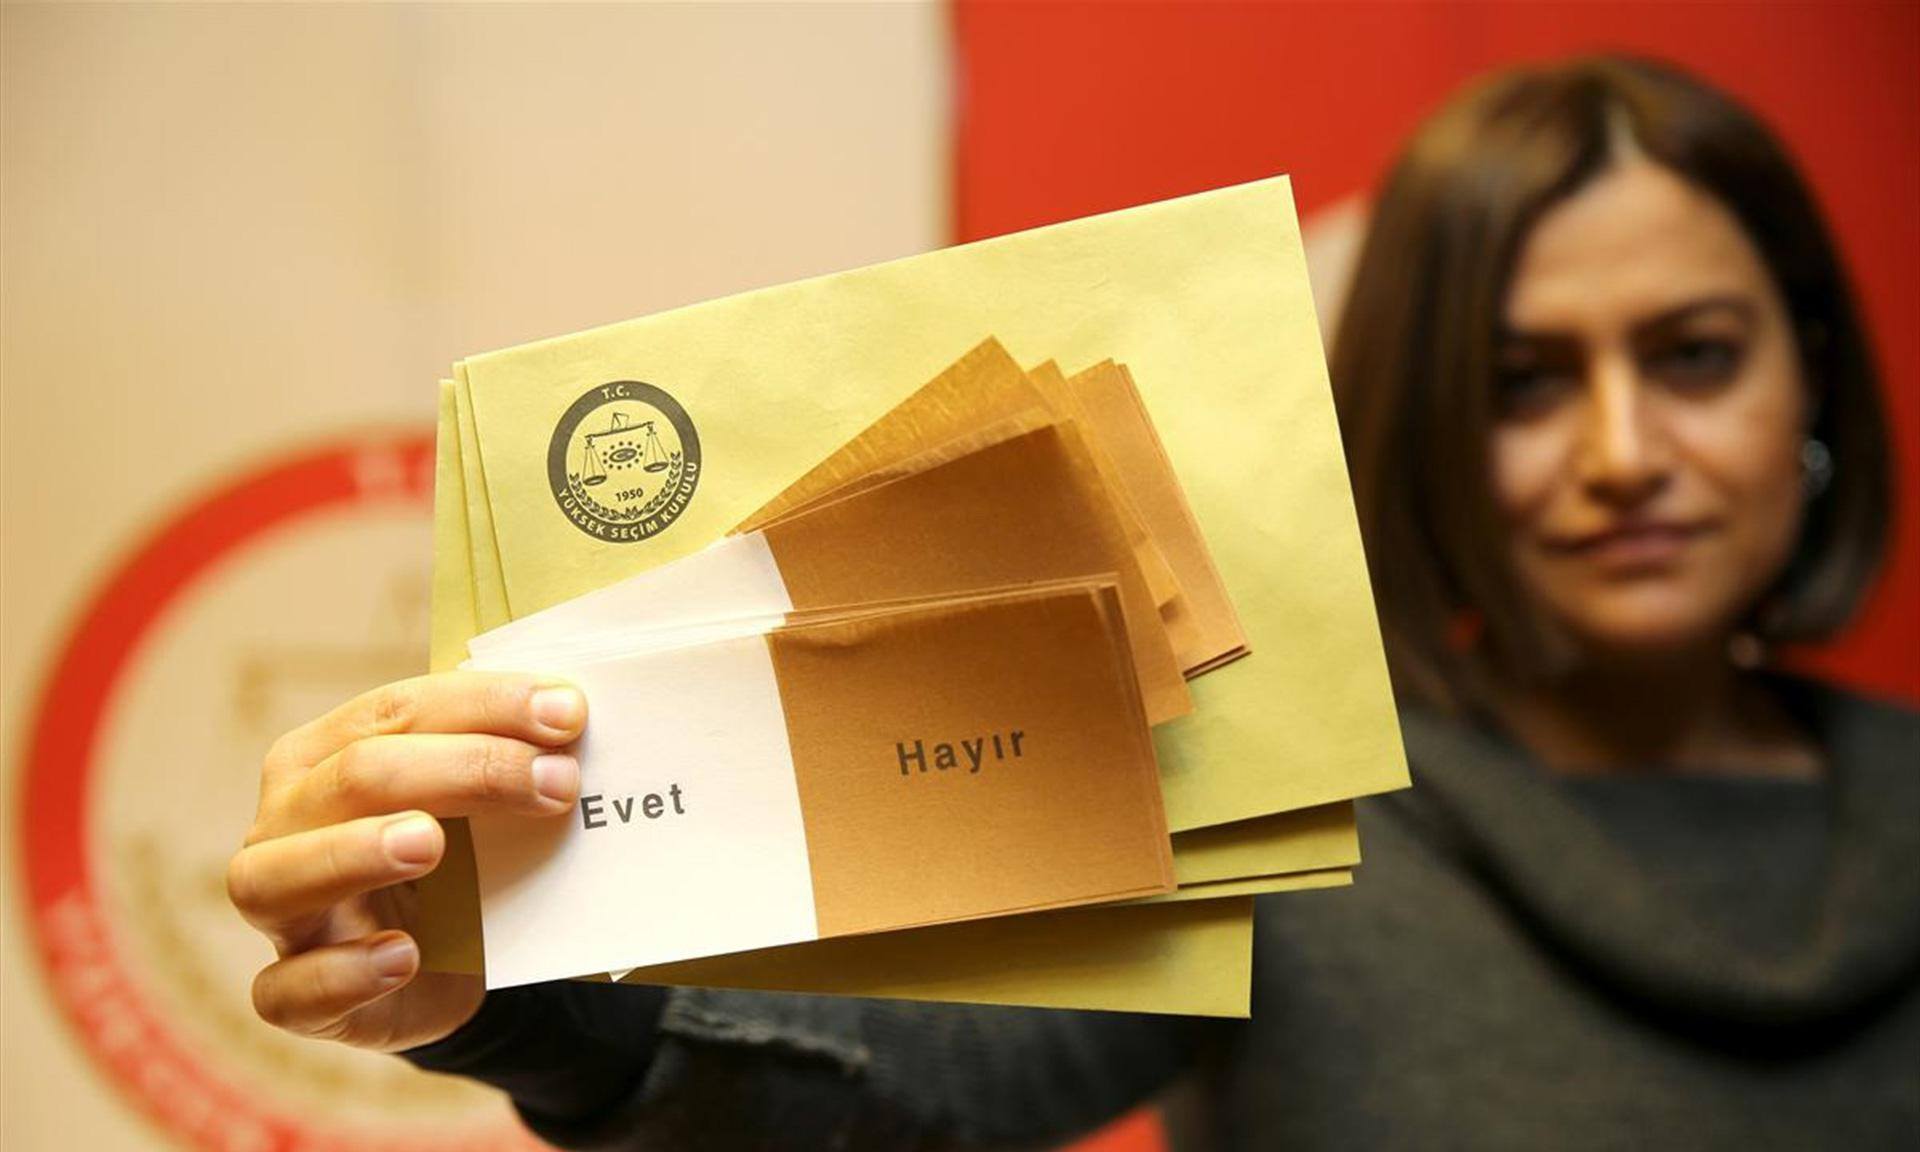 Türkiyə referendumu: Səslər hesablanır – “Əvət” öndə – YENİLƏNİR